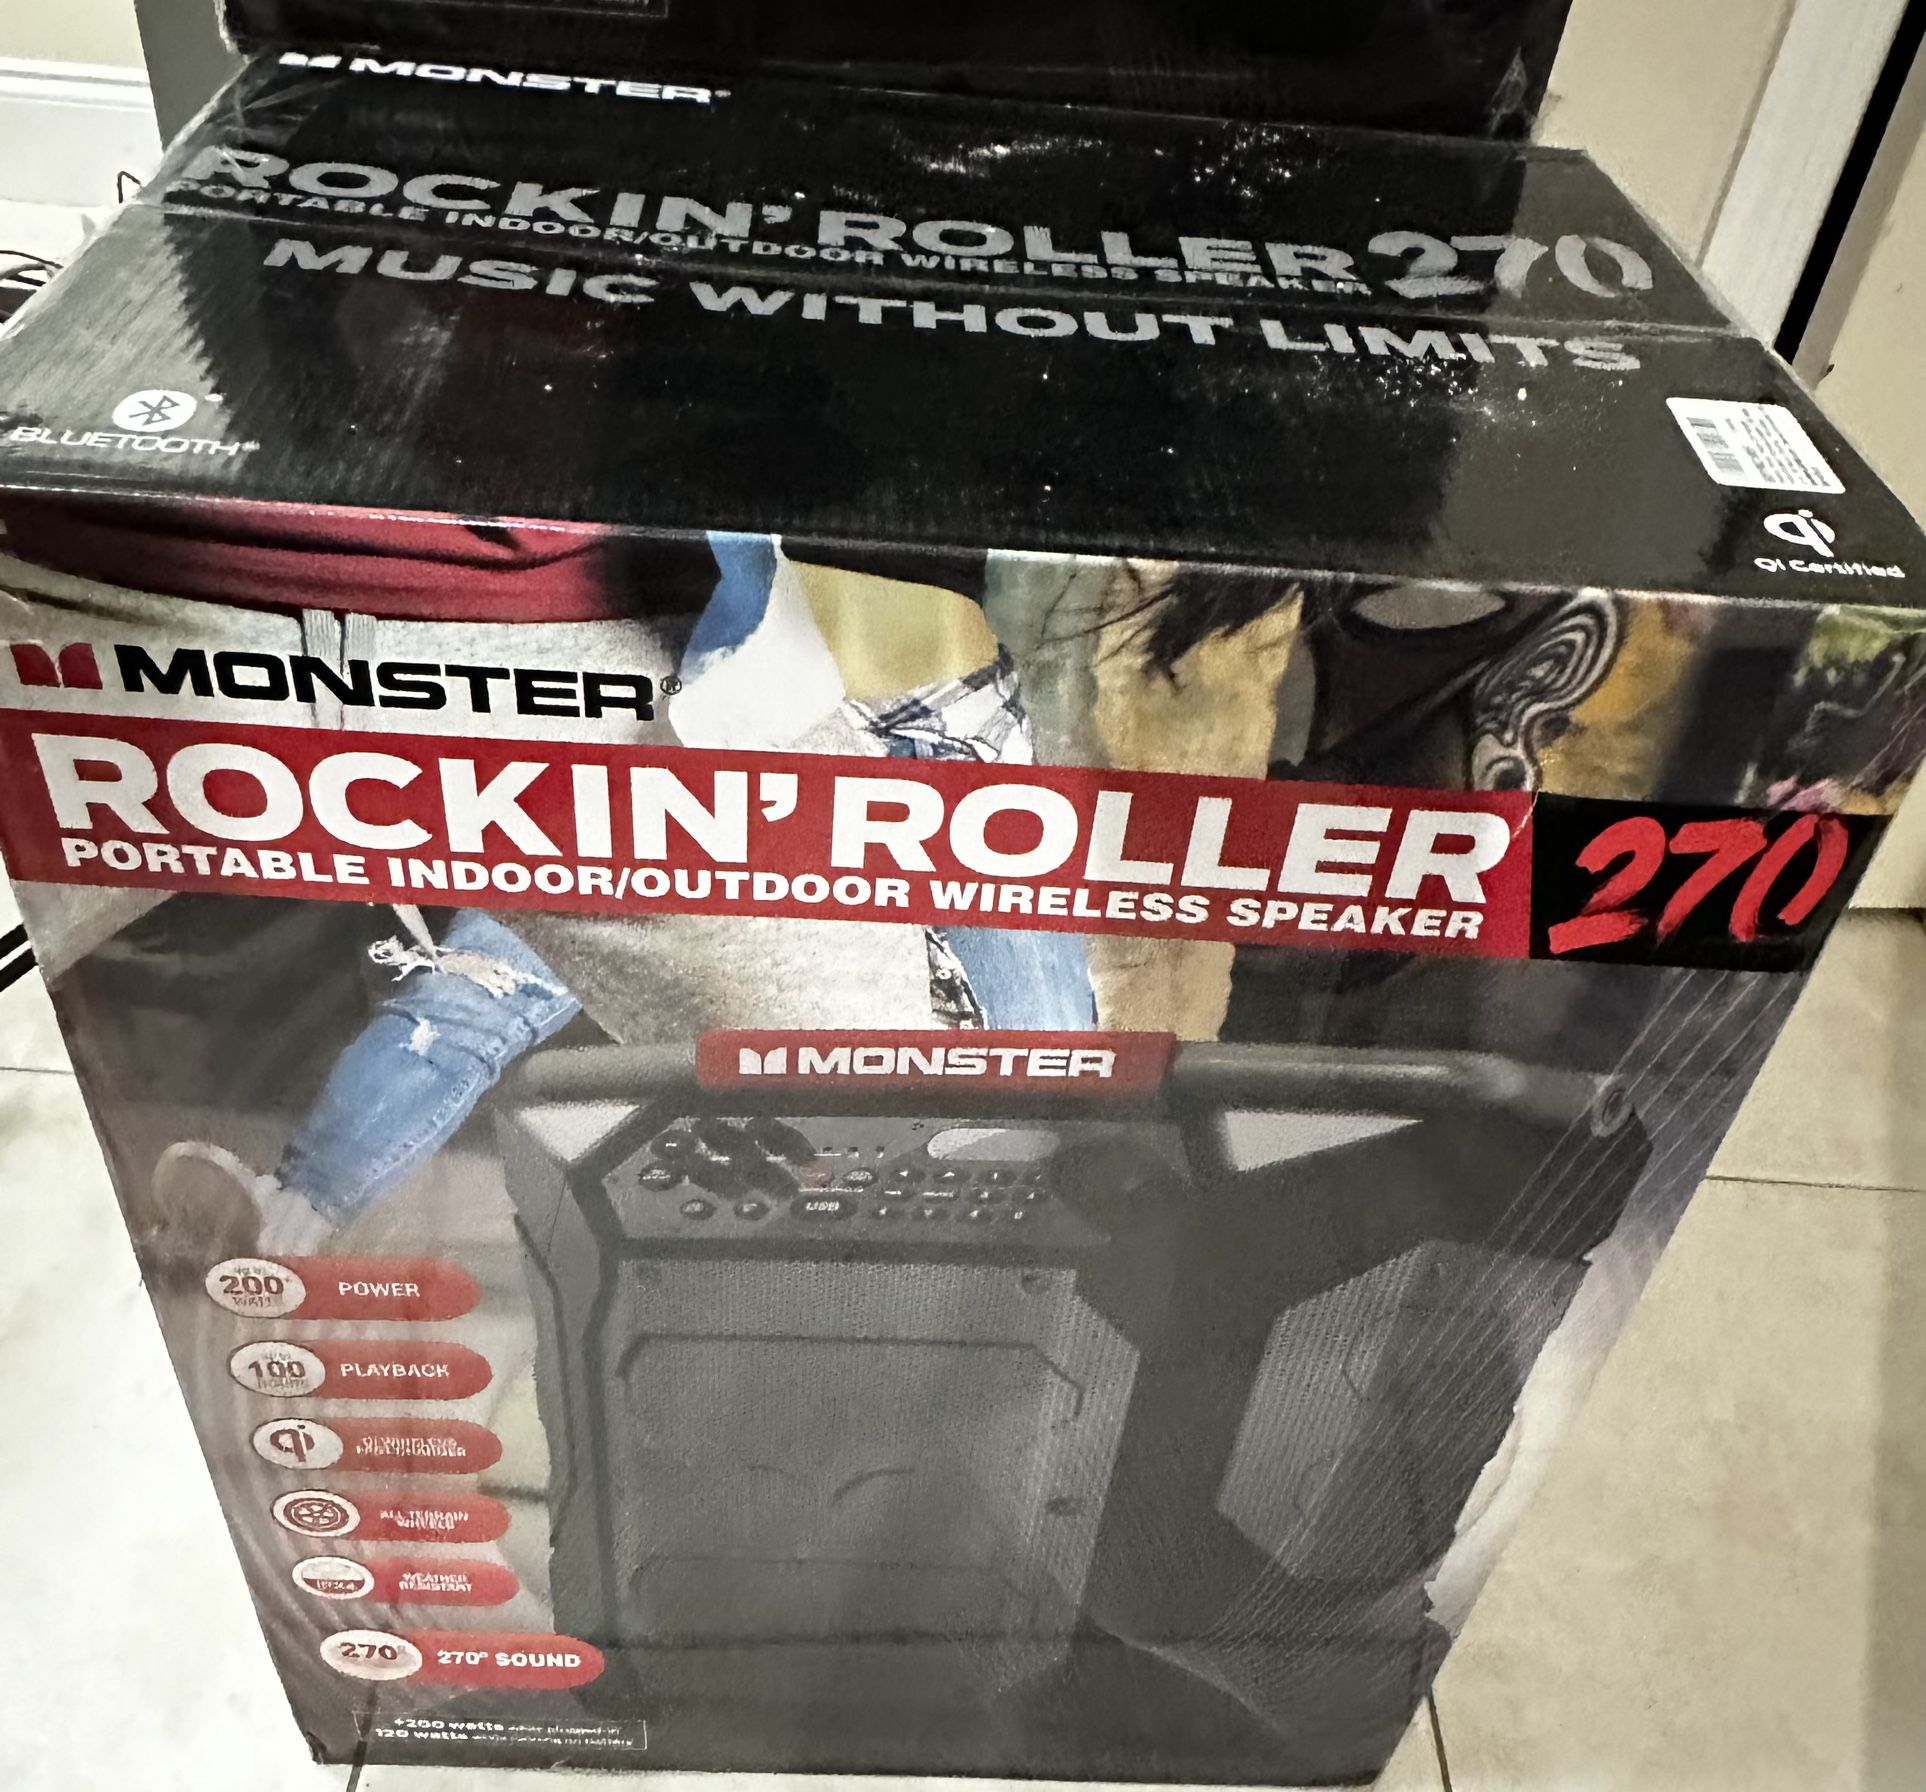 Monster Rockin' Roller 270 Portable Indoor/Outdoor Wireless Speaker